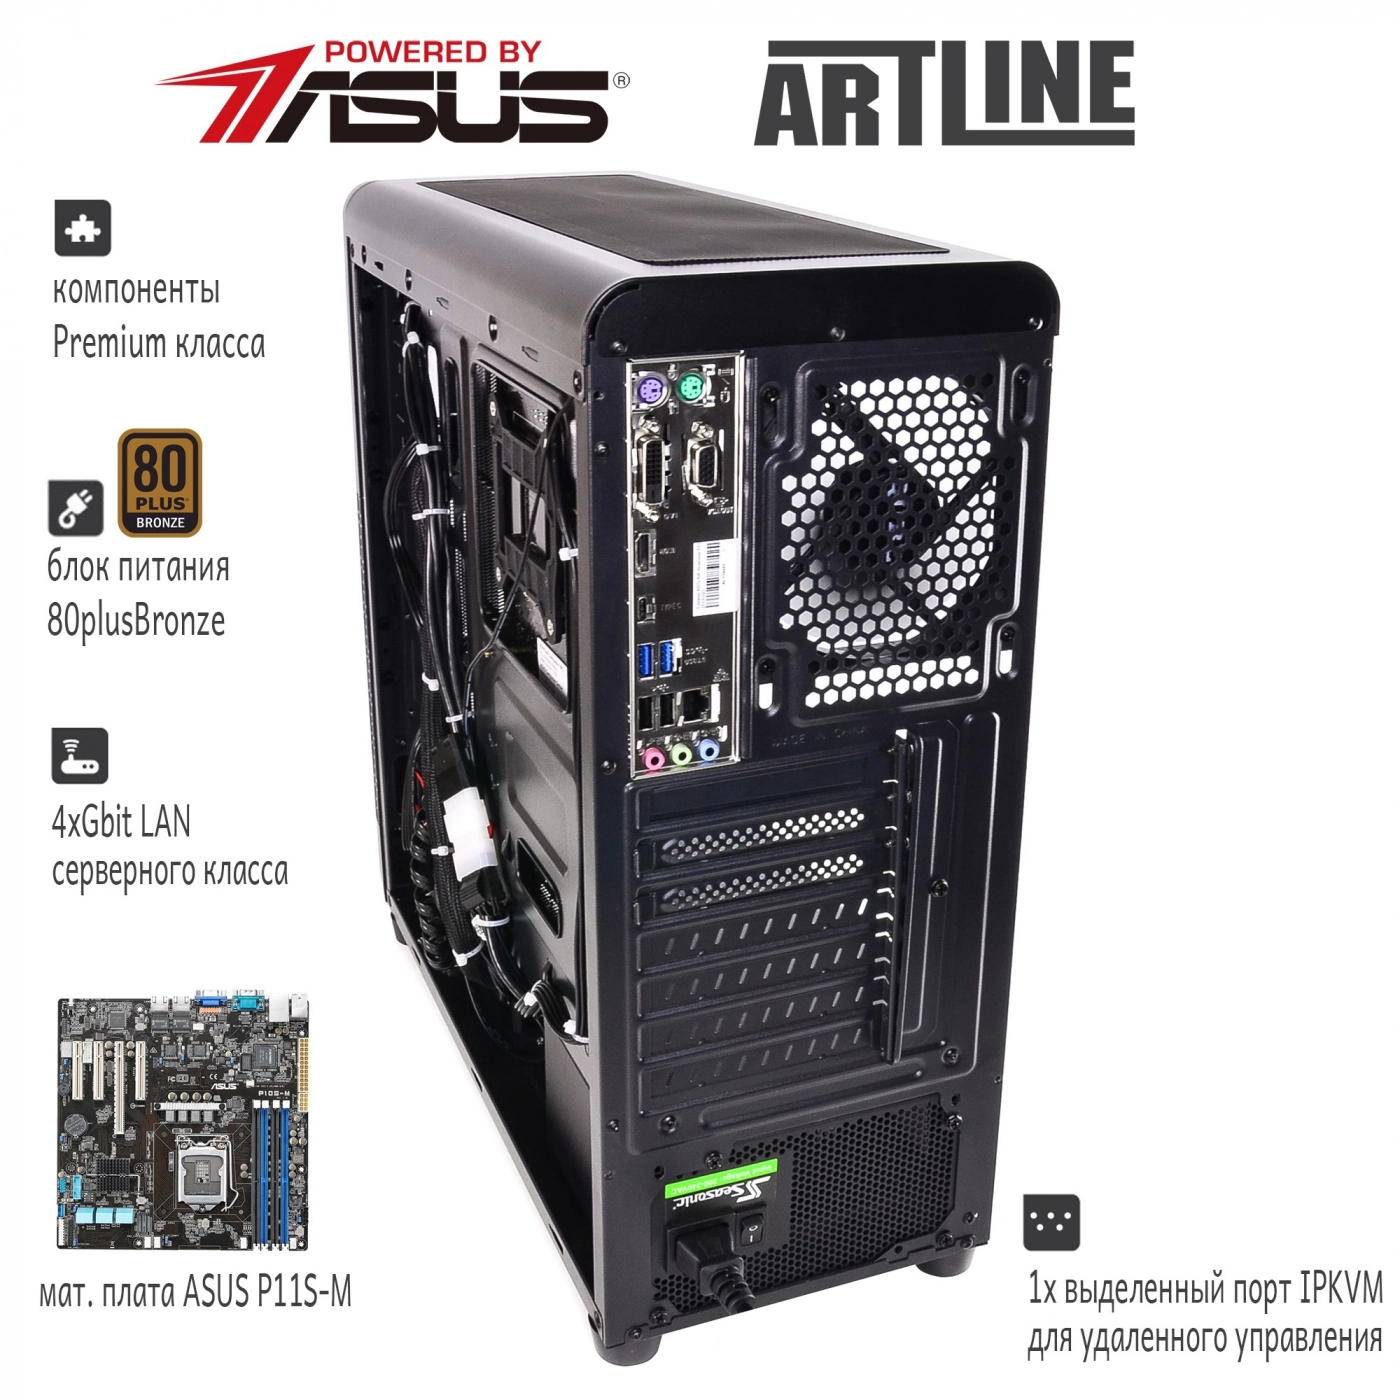 Купить Сервер ARTLINE Business T27v05 - фото 3